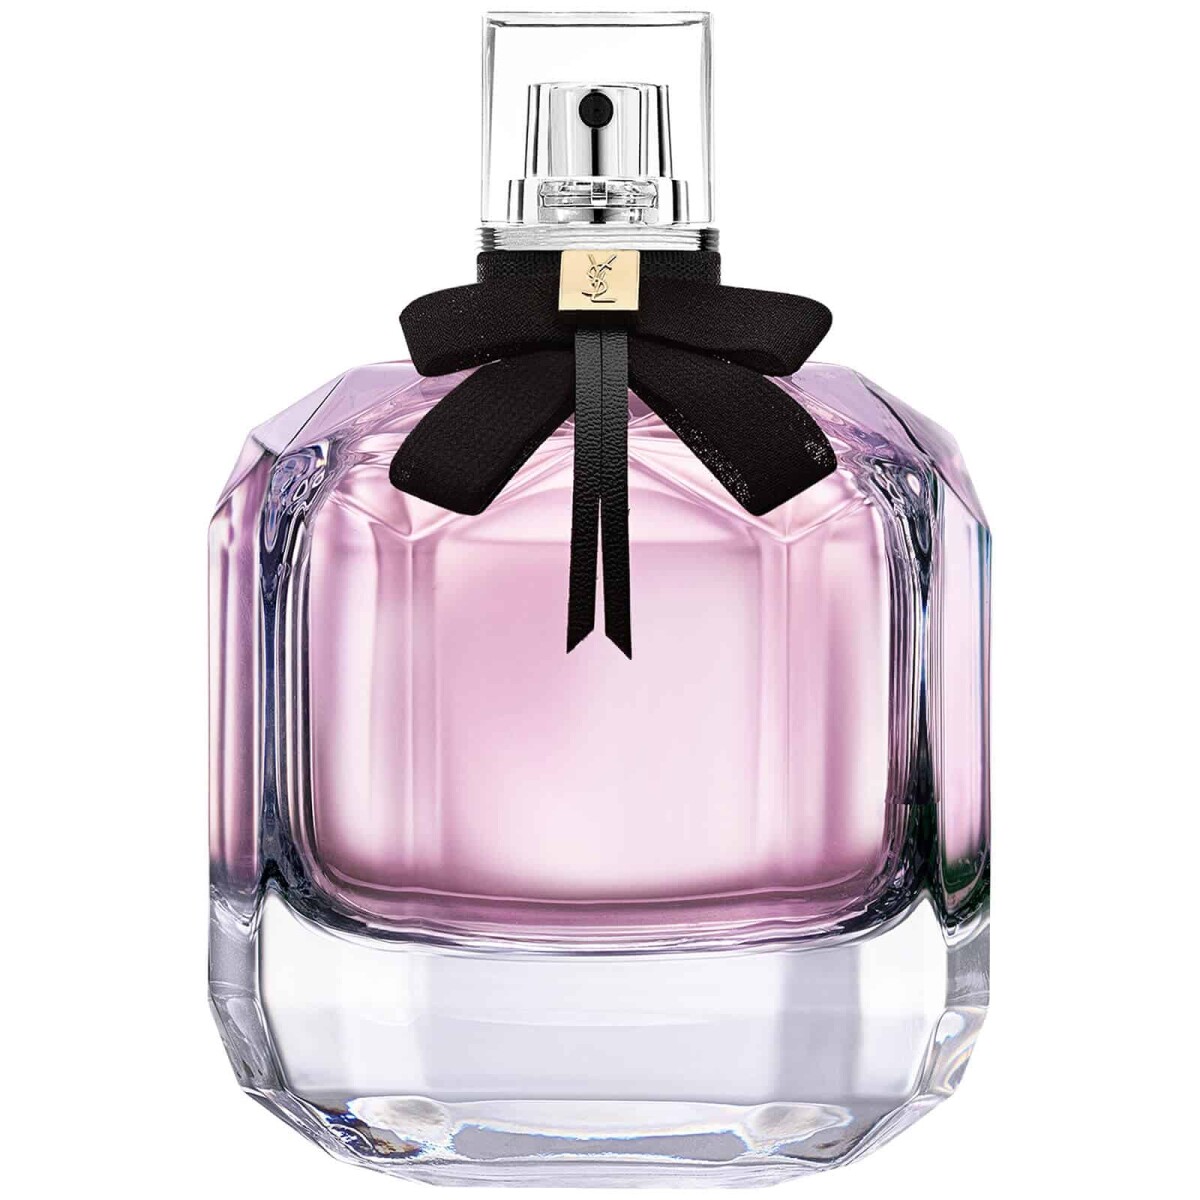 Perfume Ysl Mon Paris Edp 50 ml 